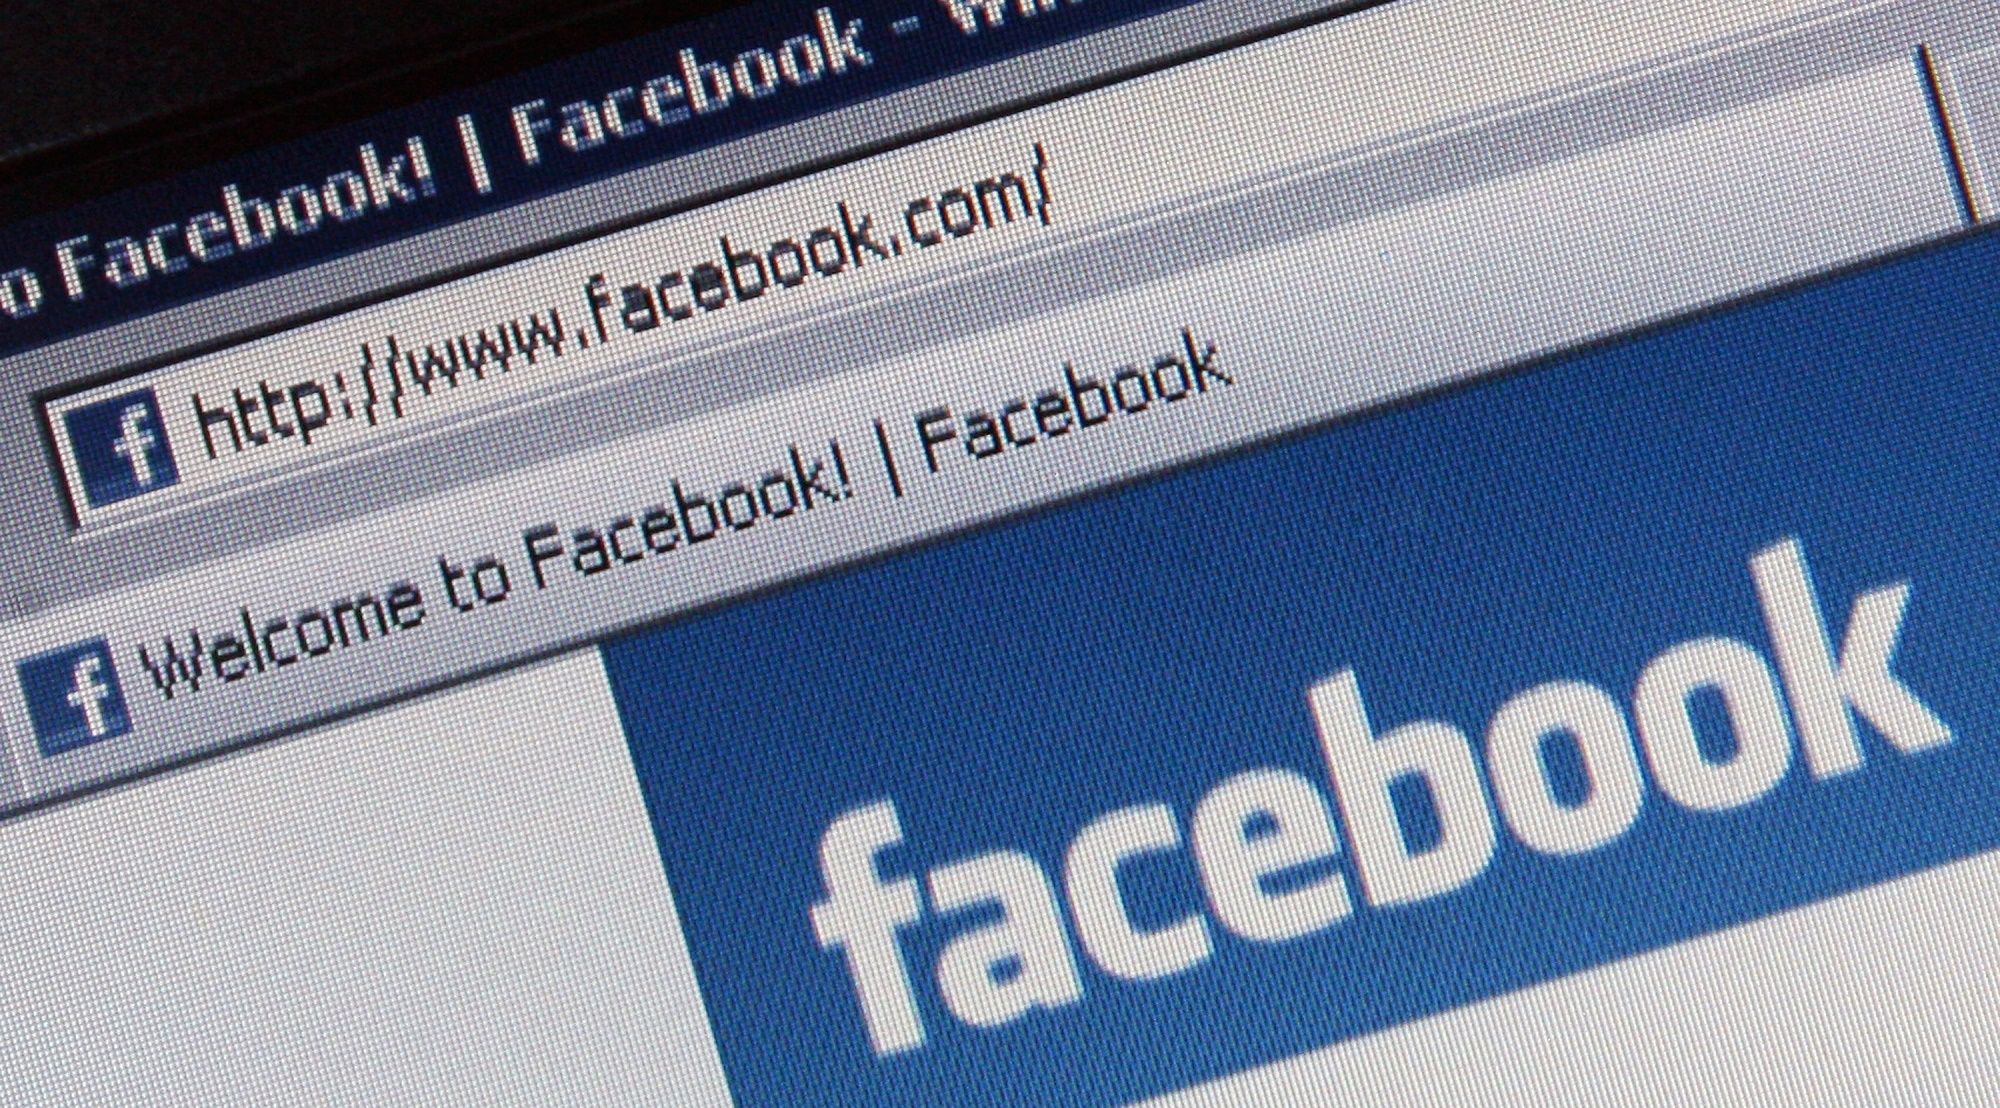 Cancellare i colleghi da Facebook è mobbing